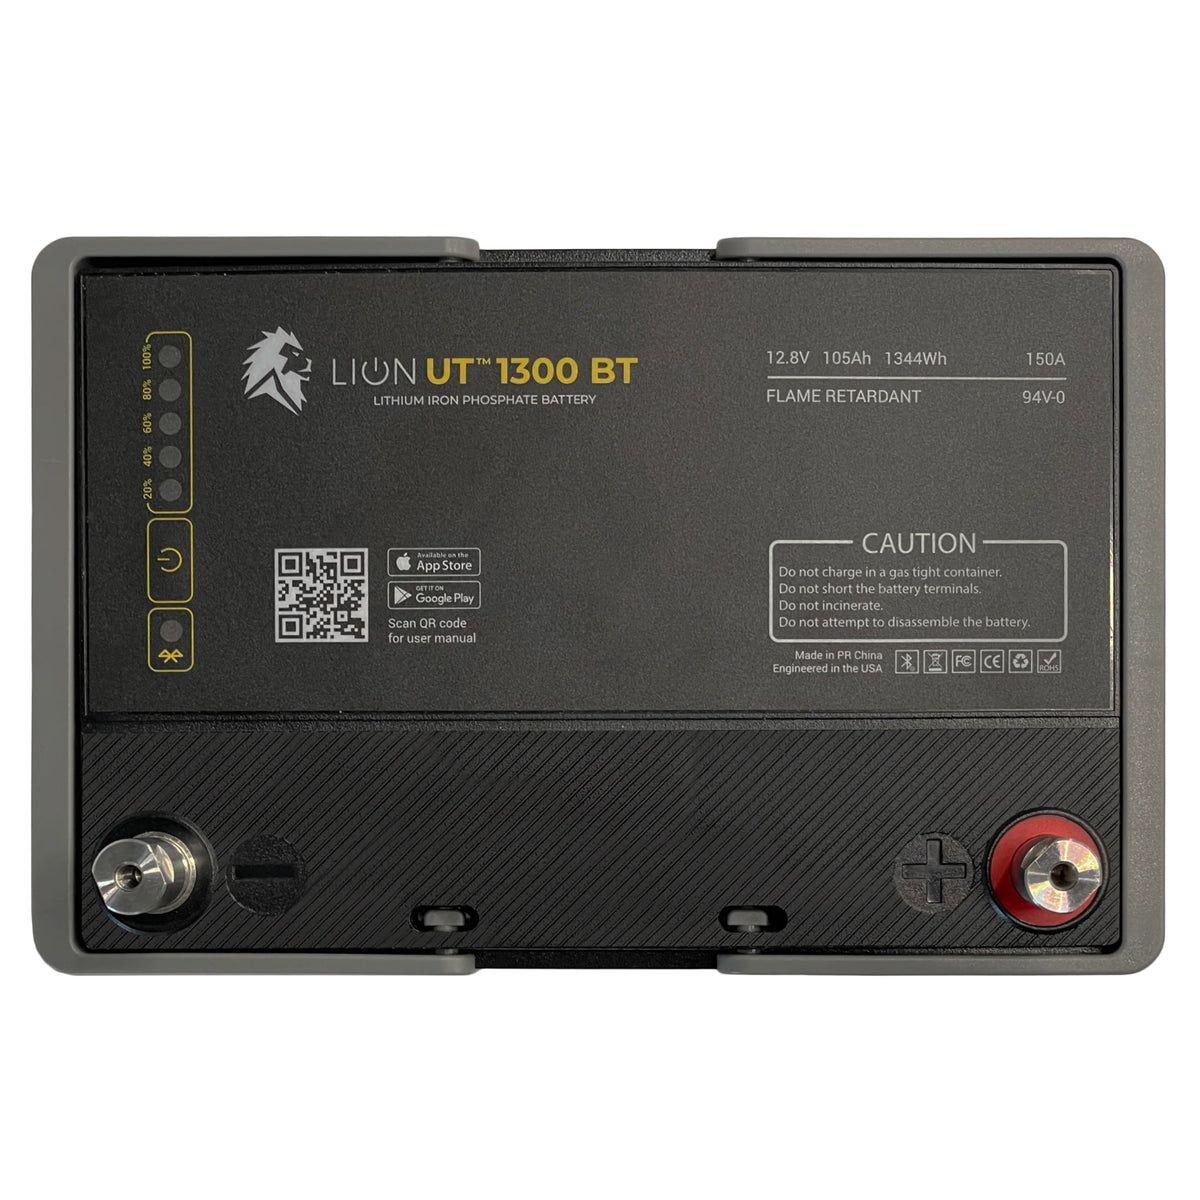 Lion Energy | Safari UT 1300 LiFePO4 Battery (2 Pack)